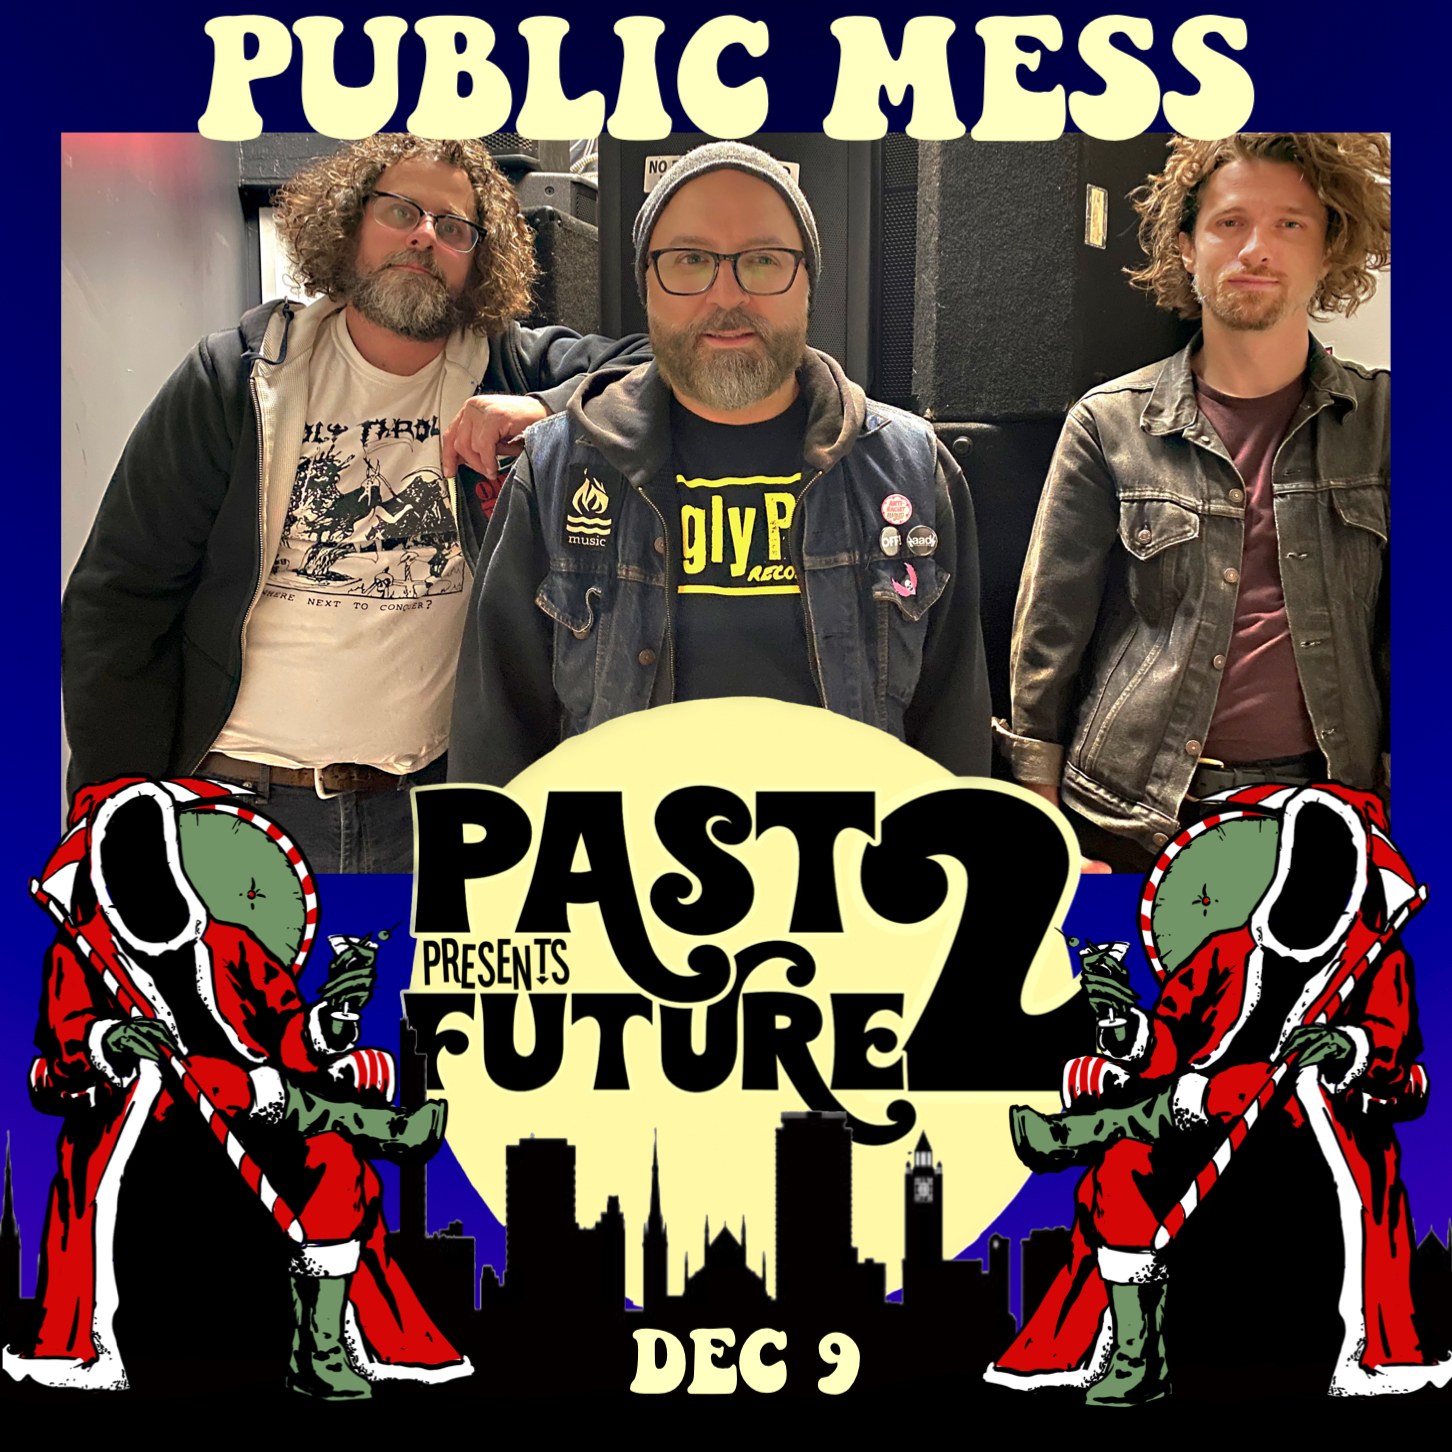 Public Mess at Past Presents Future